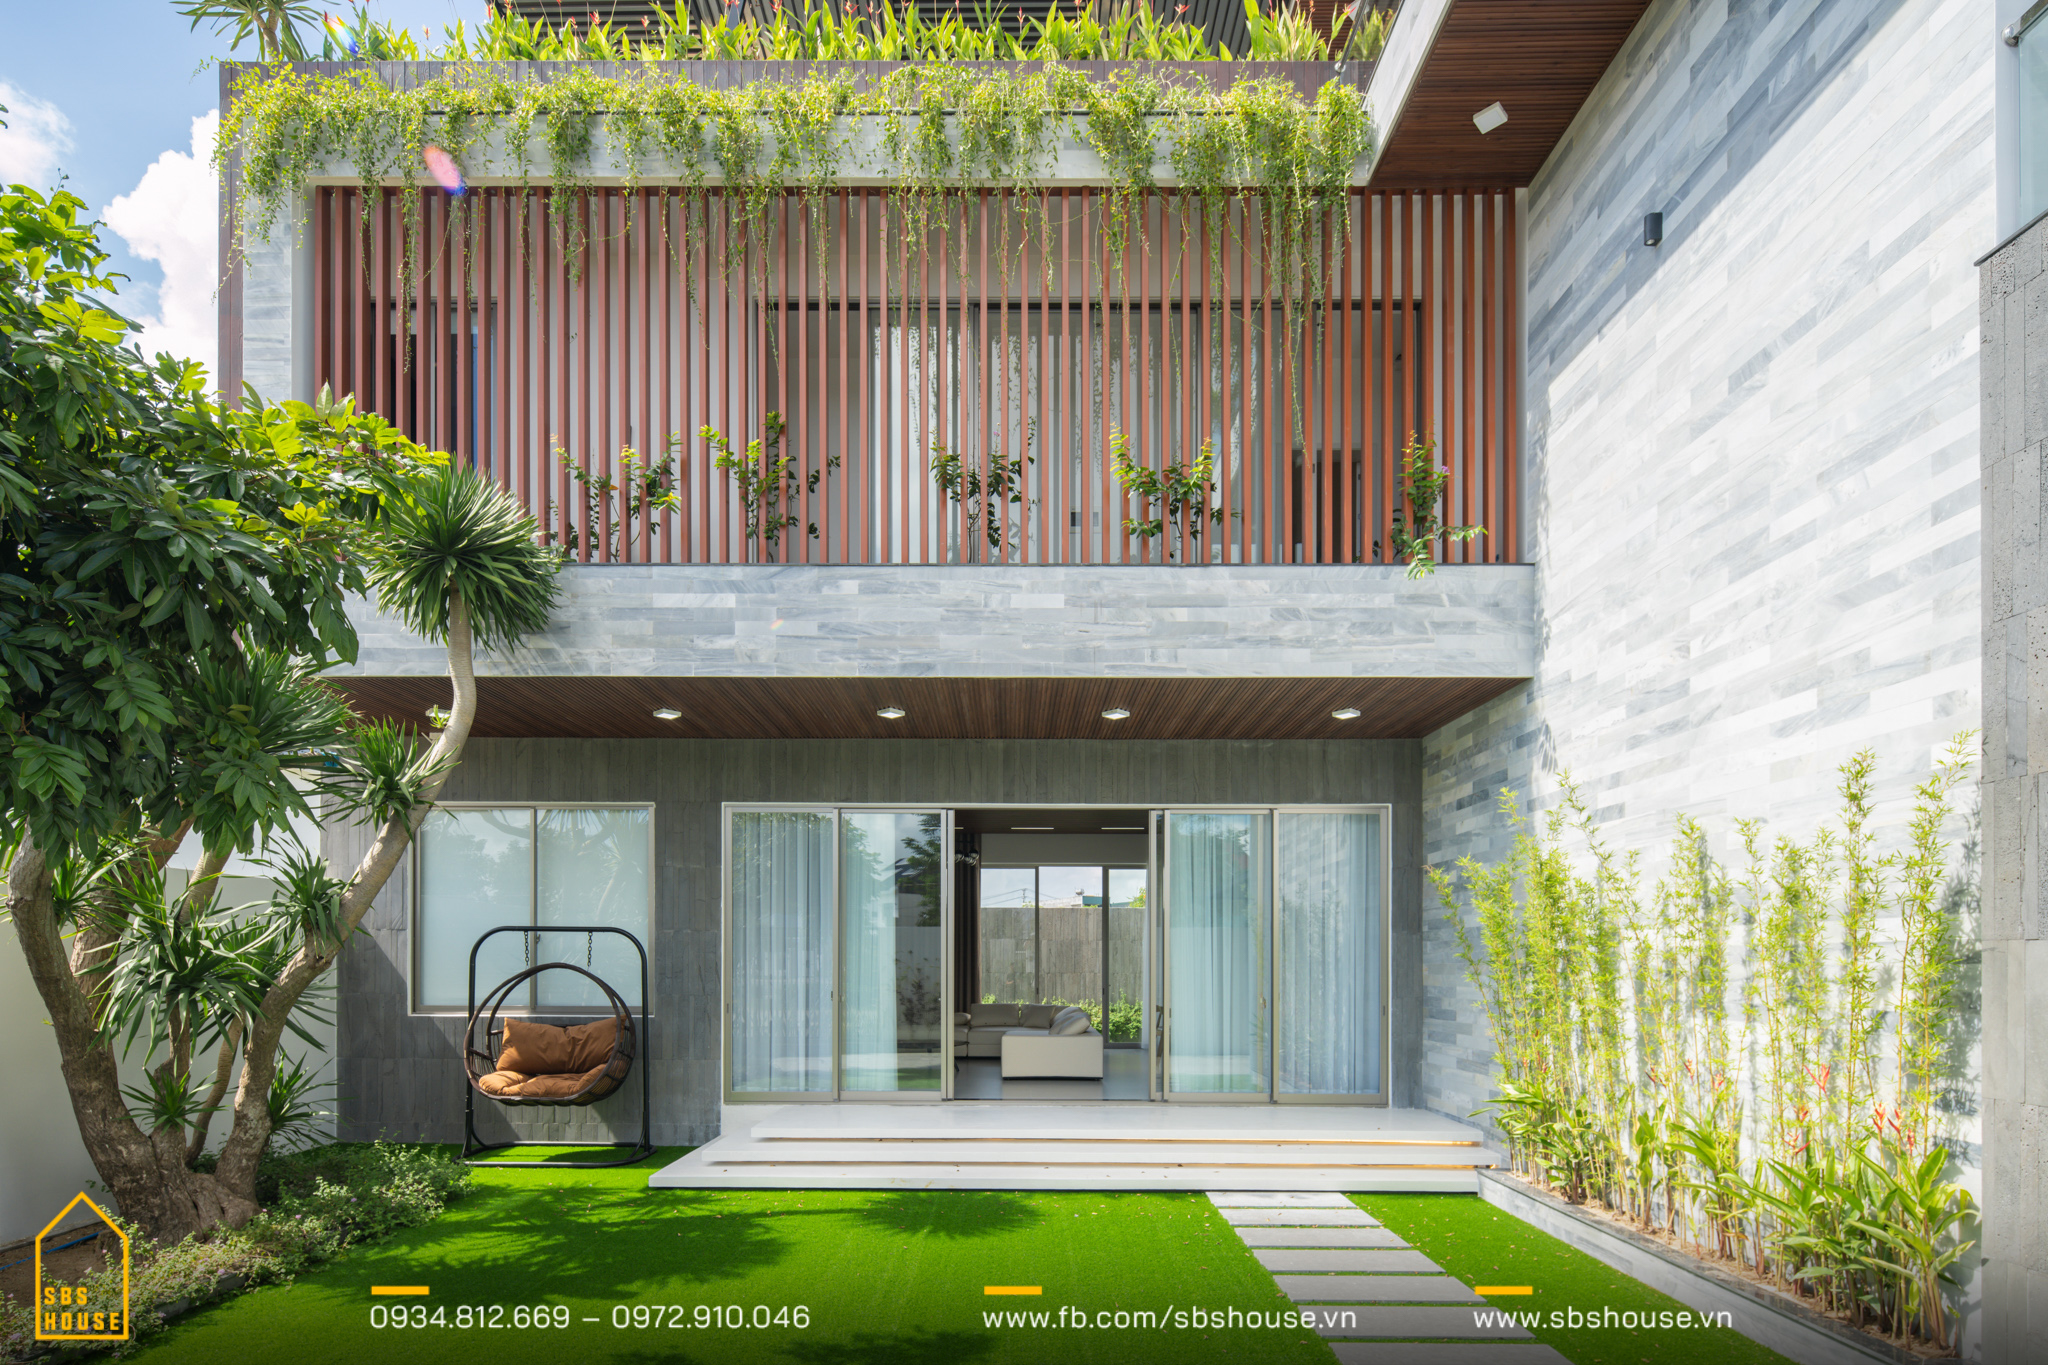 Thiết kế sân vườn biệt thự phố nhà Anh Quỳnh tại khu dân cư Hải Sơn